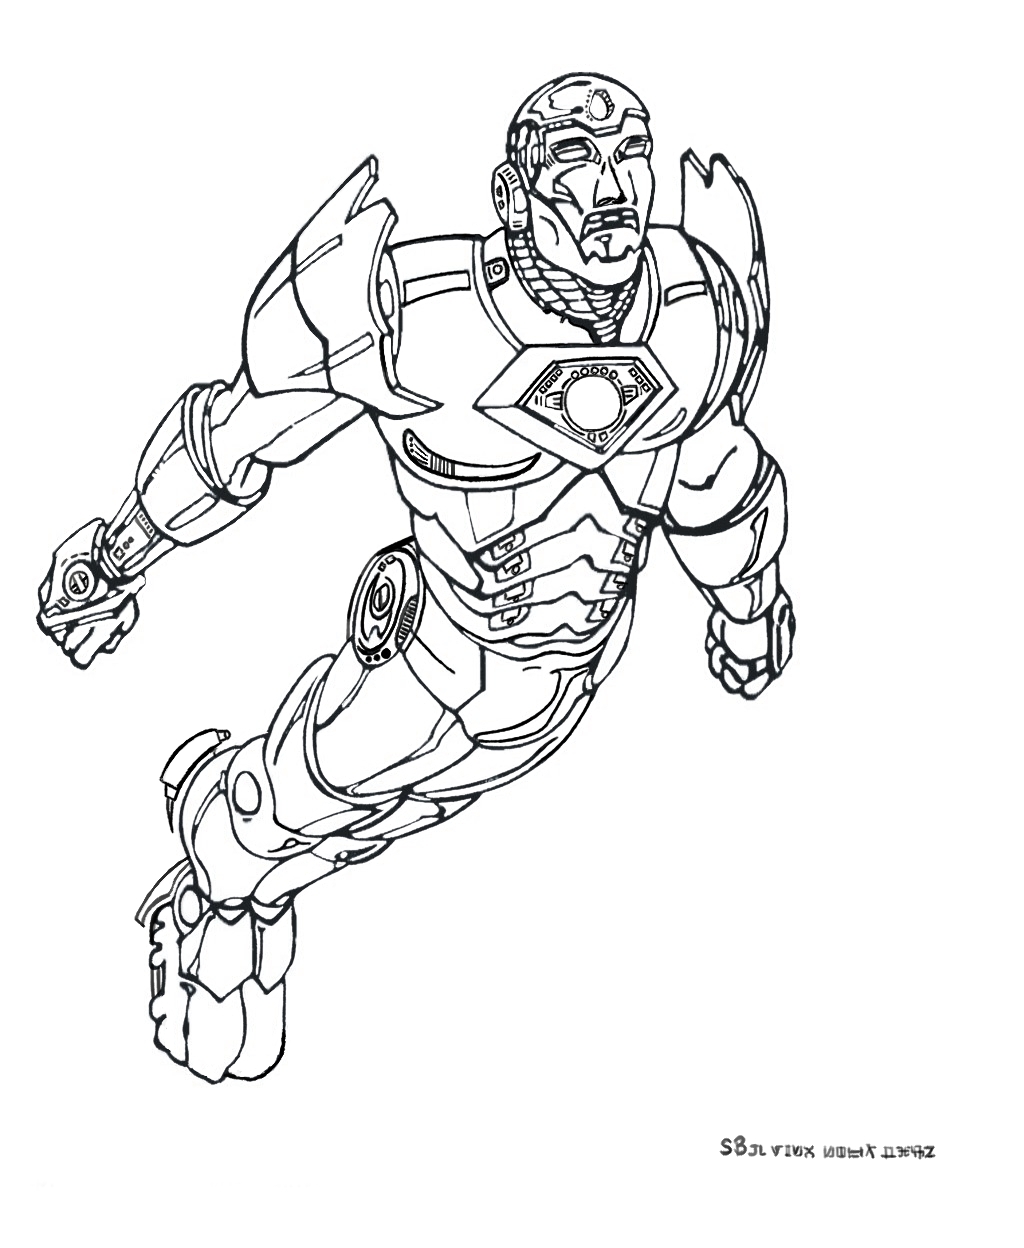 Con su armadura, Tony Stark se convierte en Iron Man y puede volar.